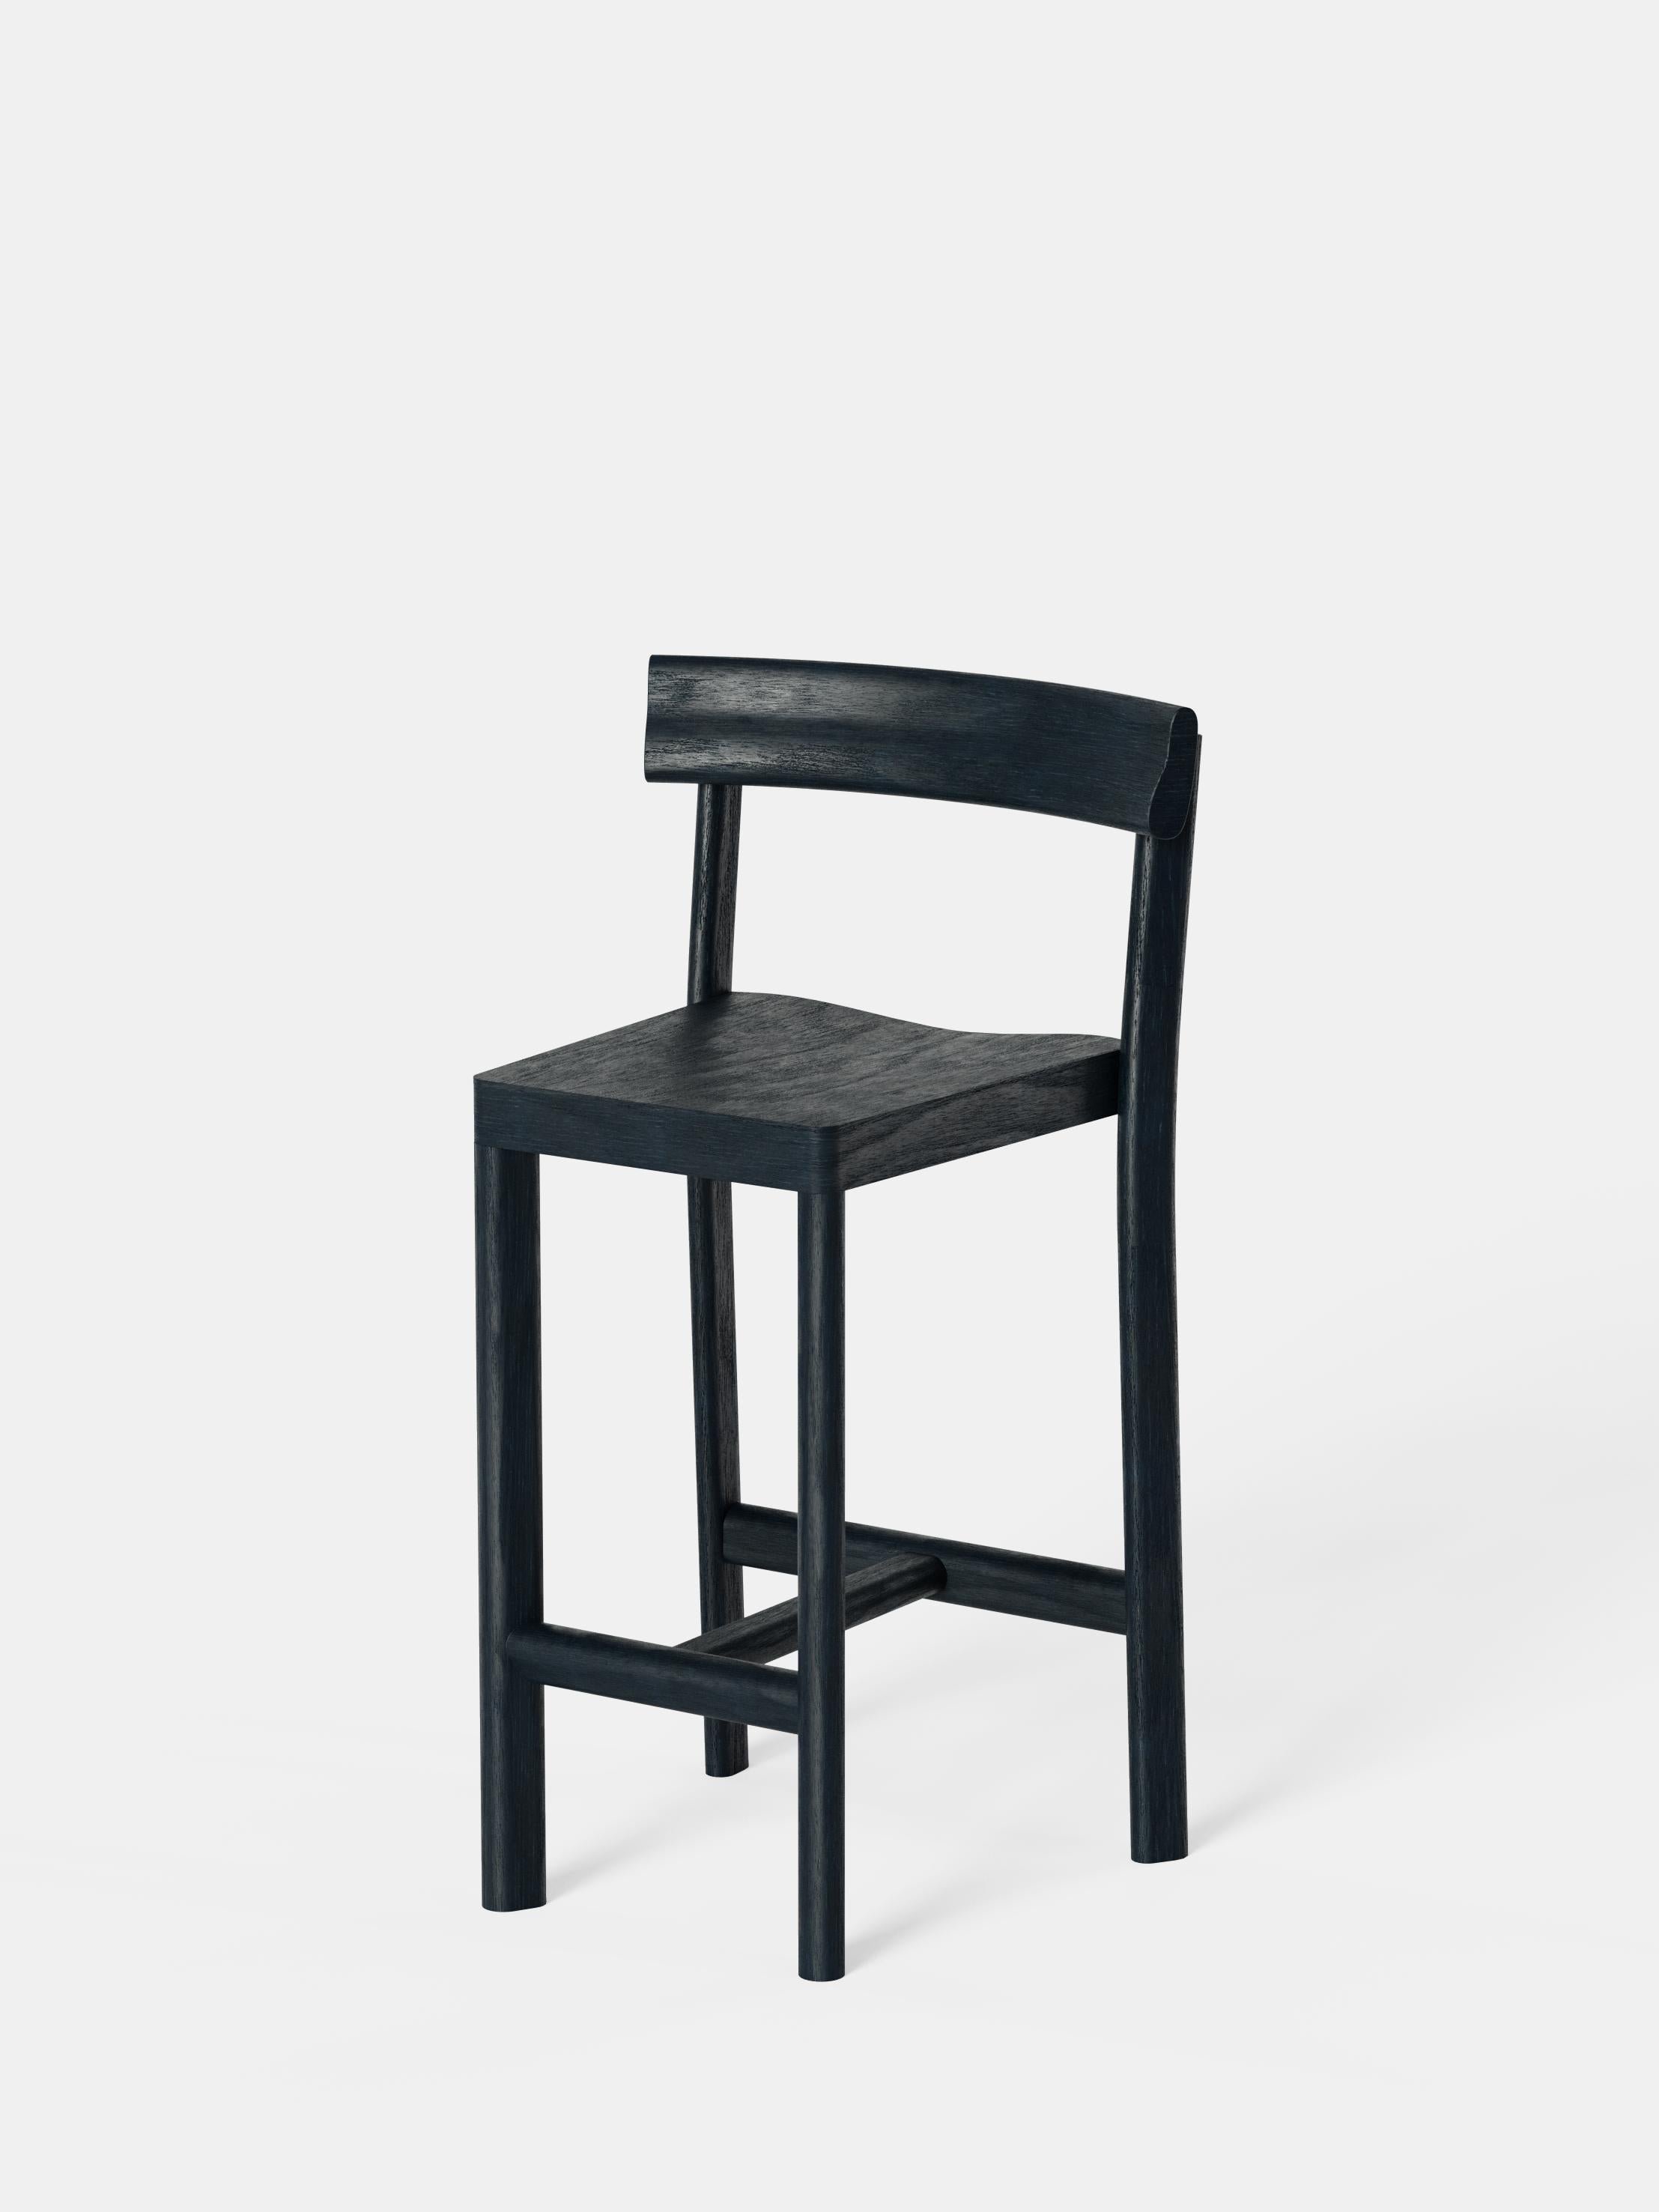 Ensemble de 6 chaises de comptoir Galta 65 en chêne noir par Kann Design
Dimensions : D 50 x L 43 x H 91,5 cm.
MATERIAL : Chêne laqué noir.
Disponible dans d'autres couleurs.

La chaise de comptoir Galta est la grande sœur de la chaise classique